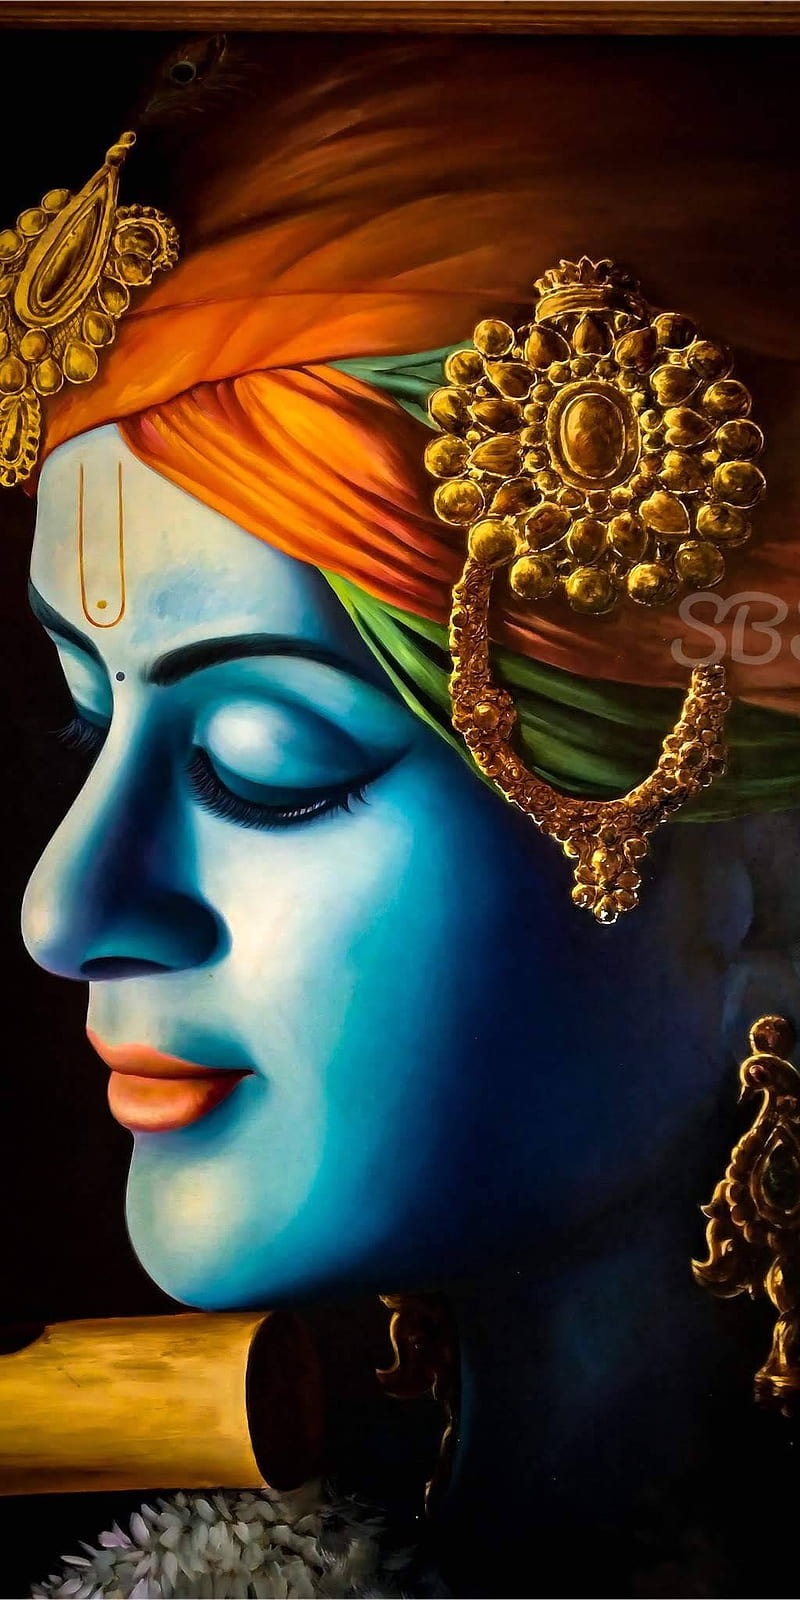 Shri Krishna  Lord krishna images Radha krishna art Lord krishna hd  wallpaper